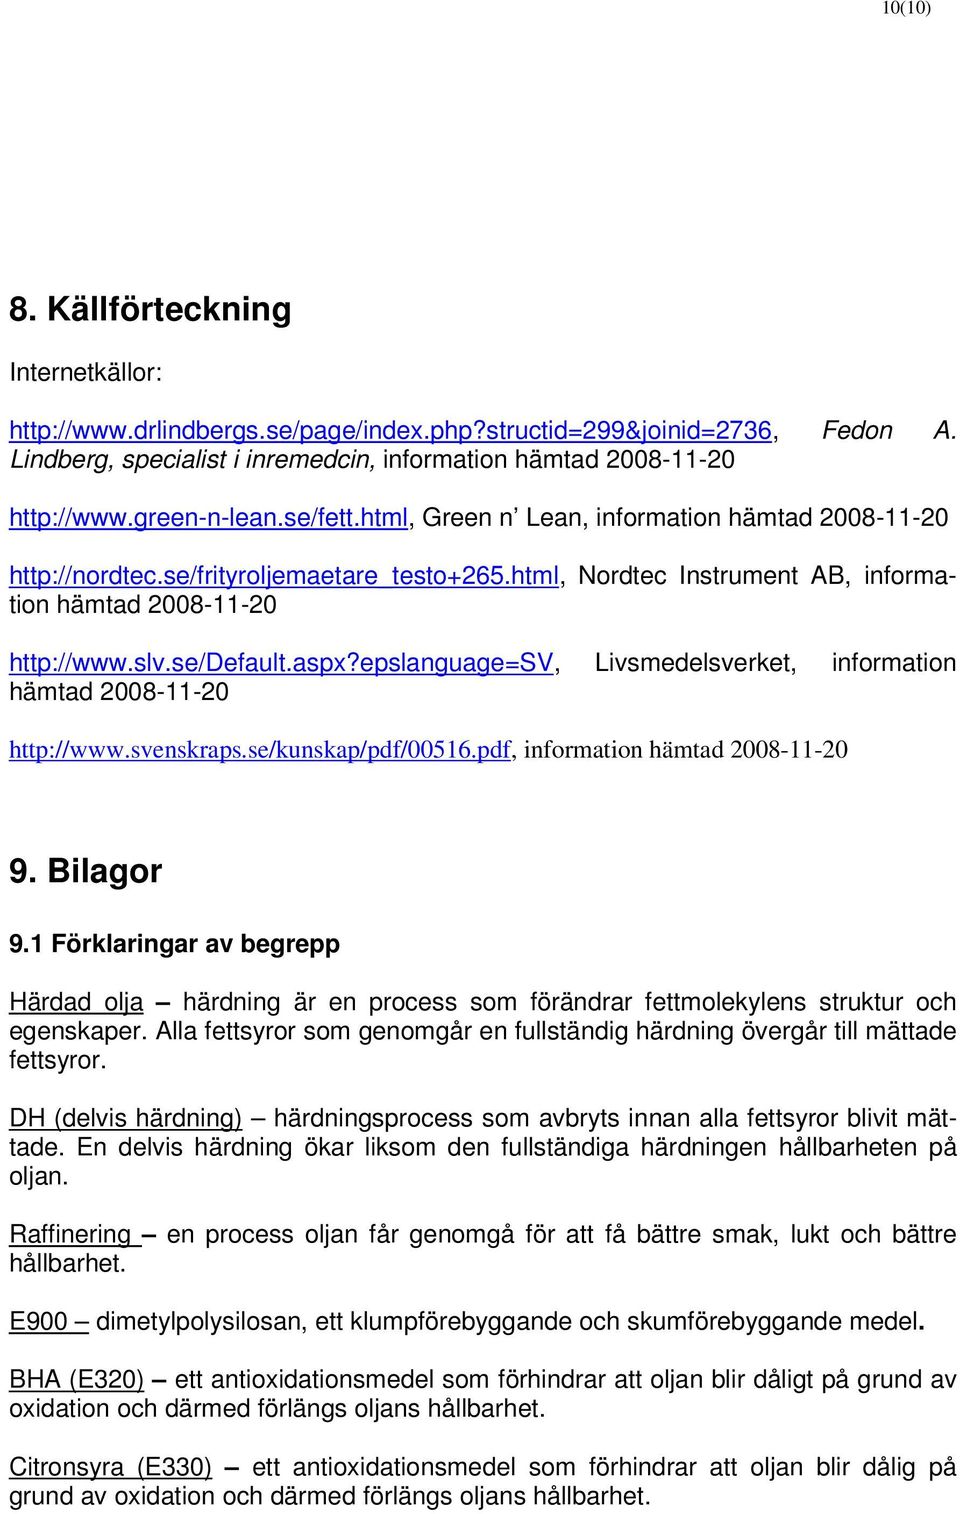 se/default.aspx?epslanguage=sv, Livsmedelsverket, information hämtad 2008-11-20 http://www.svenskraps.se/kunskap/pdf/00516.pdf, information hämtad 2008-11-20 9. Bilagor 9.